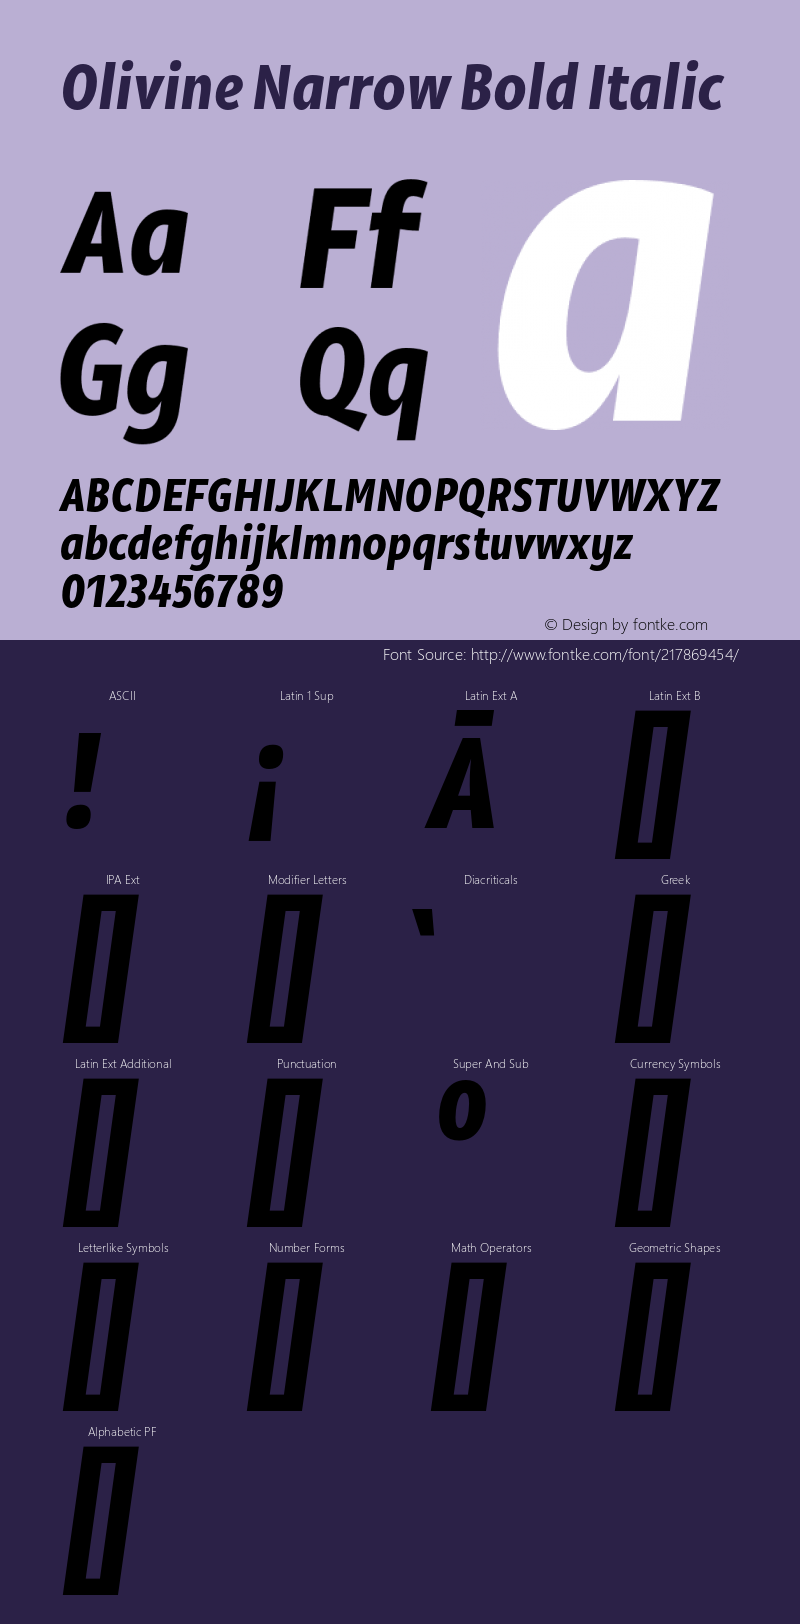 Olivine Narrow Bold Italic Version 1.000;PS 001.000;hotconv 1.0.88;makeotf.lib2.5.64775图片样张